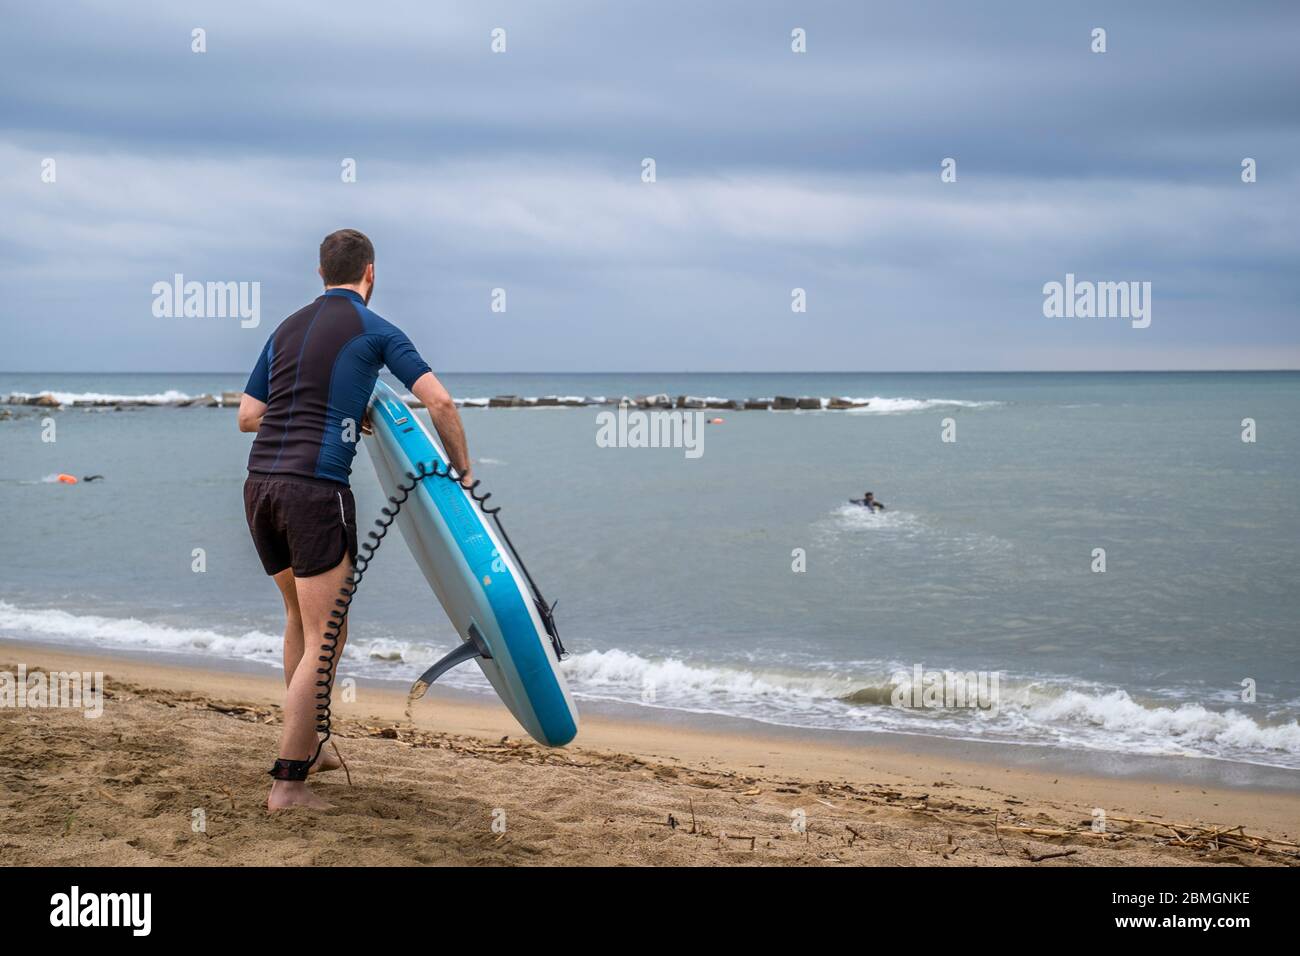 Un surfeur se prépare à entrer dans l'eau pendant les créneaux autorisés pour la pratique du sport en période de pandémie du coronavirus.la phase zéro permet à Barcelone de rouvrir les plages pour le sport individuel réglementé dans les tranches horaires en raison de la contagion de Covid-19. Banque D'Images